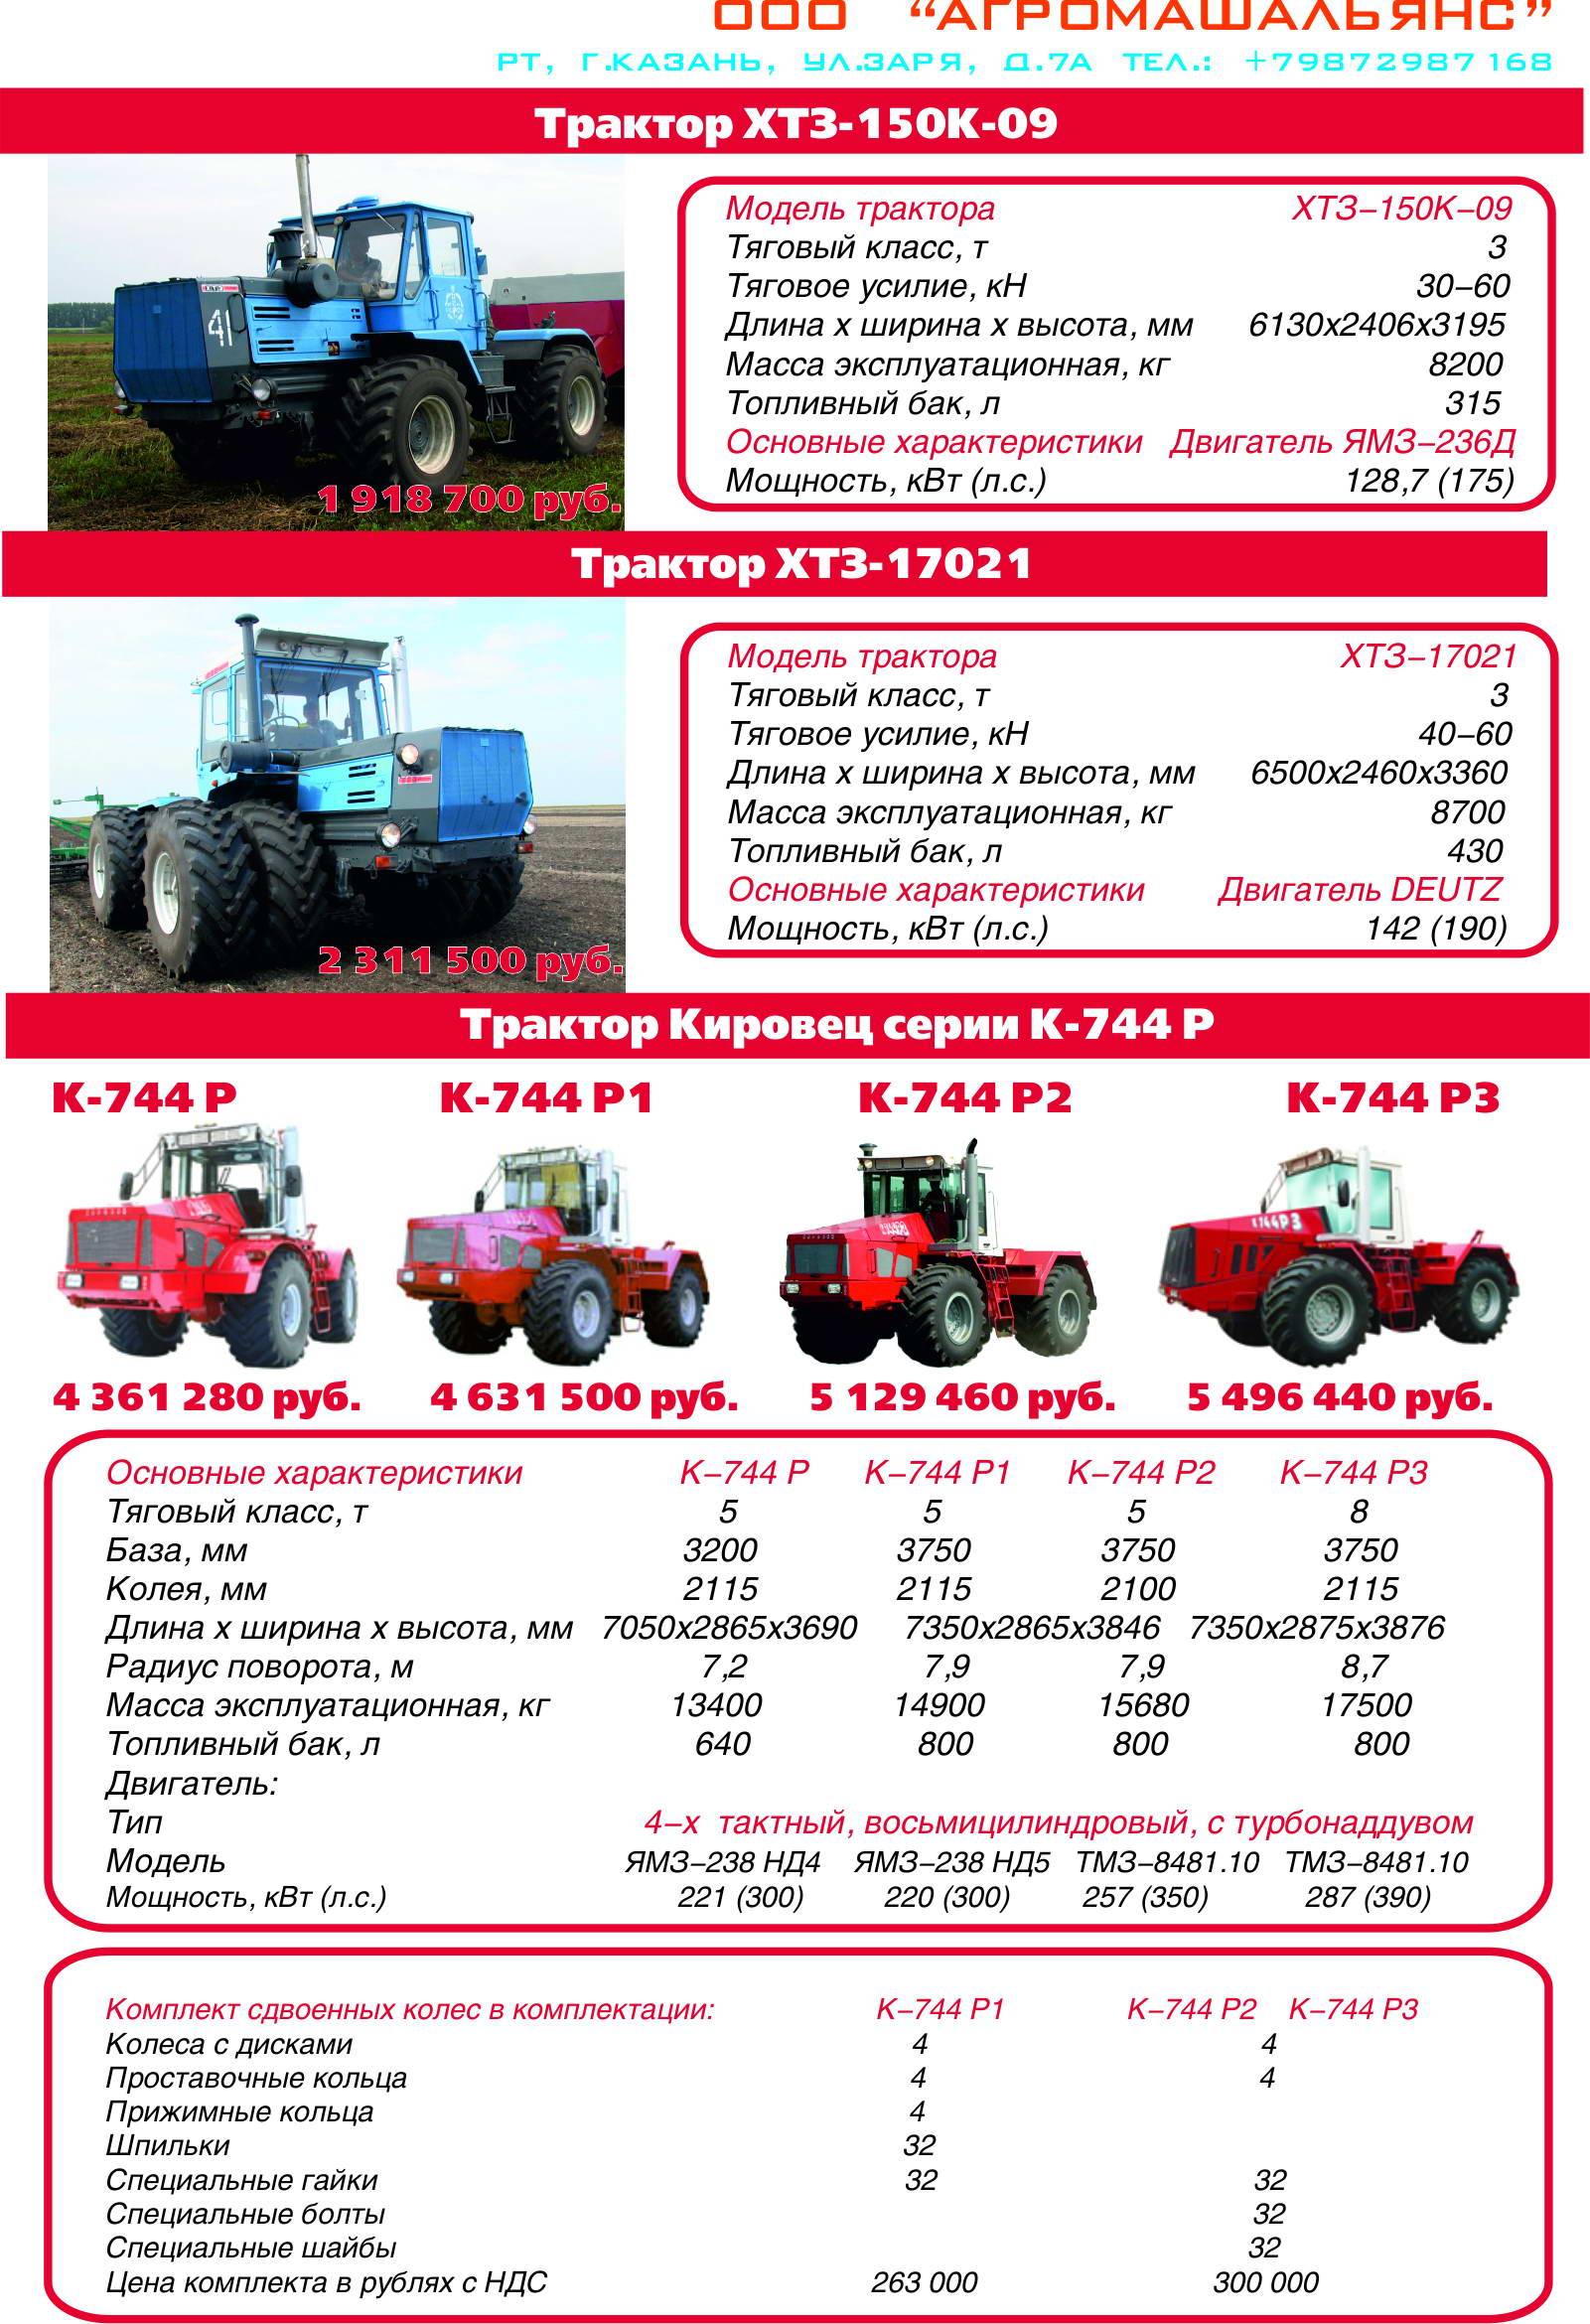 Трактор мтз-1221 беларус - устройство и характеристики